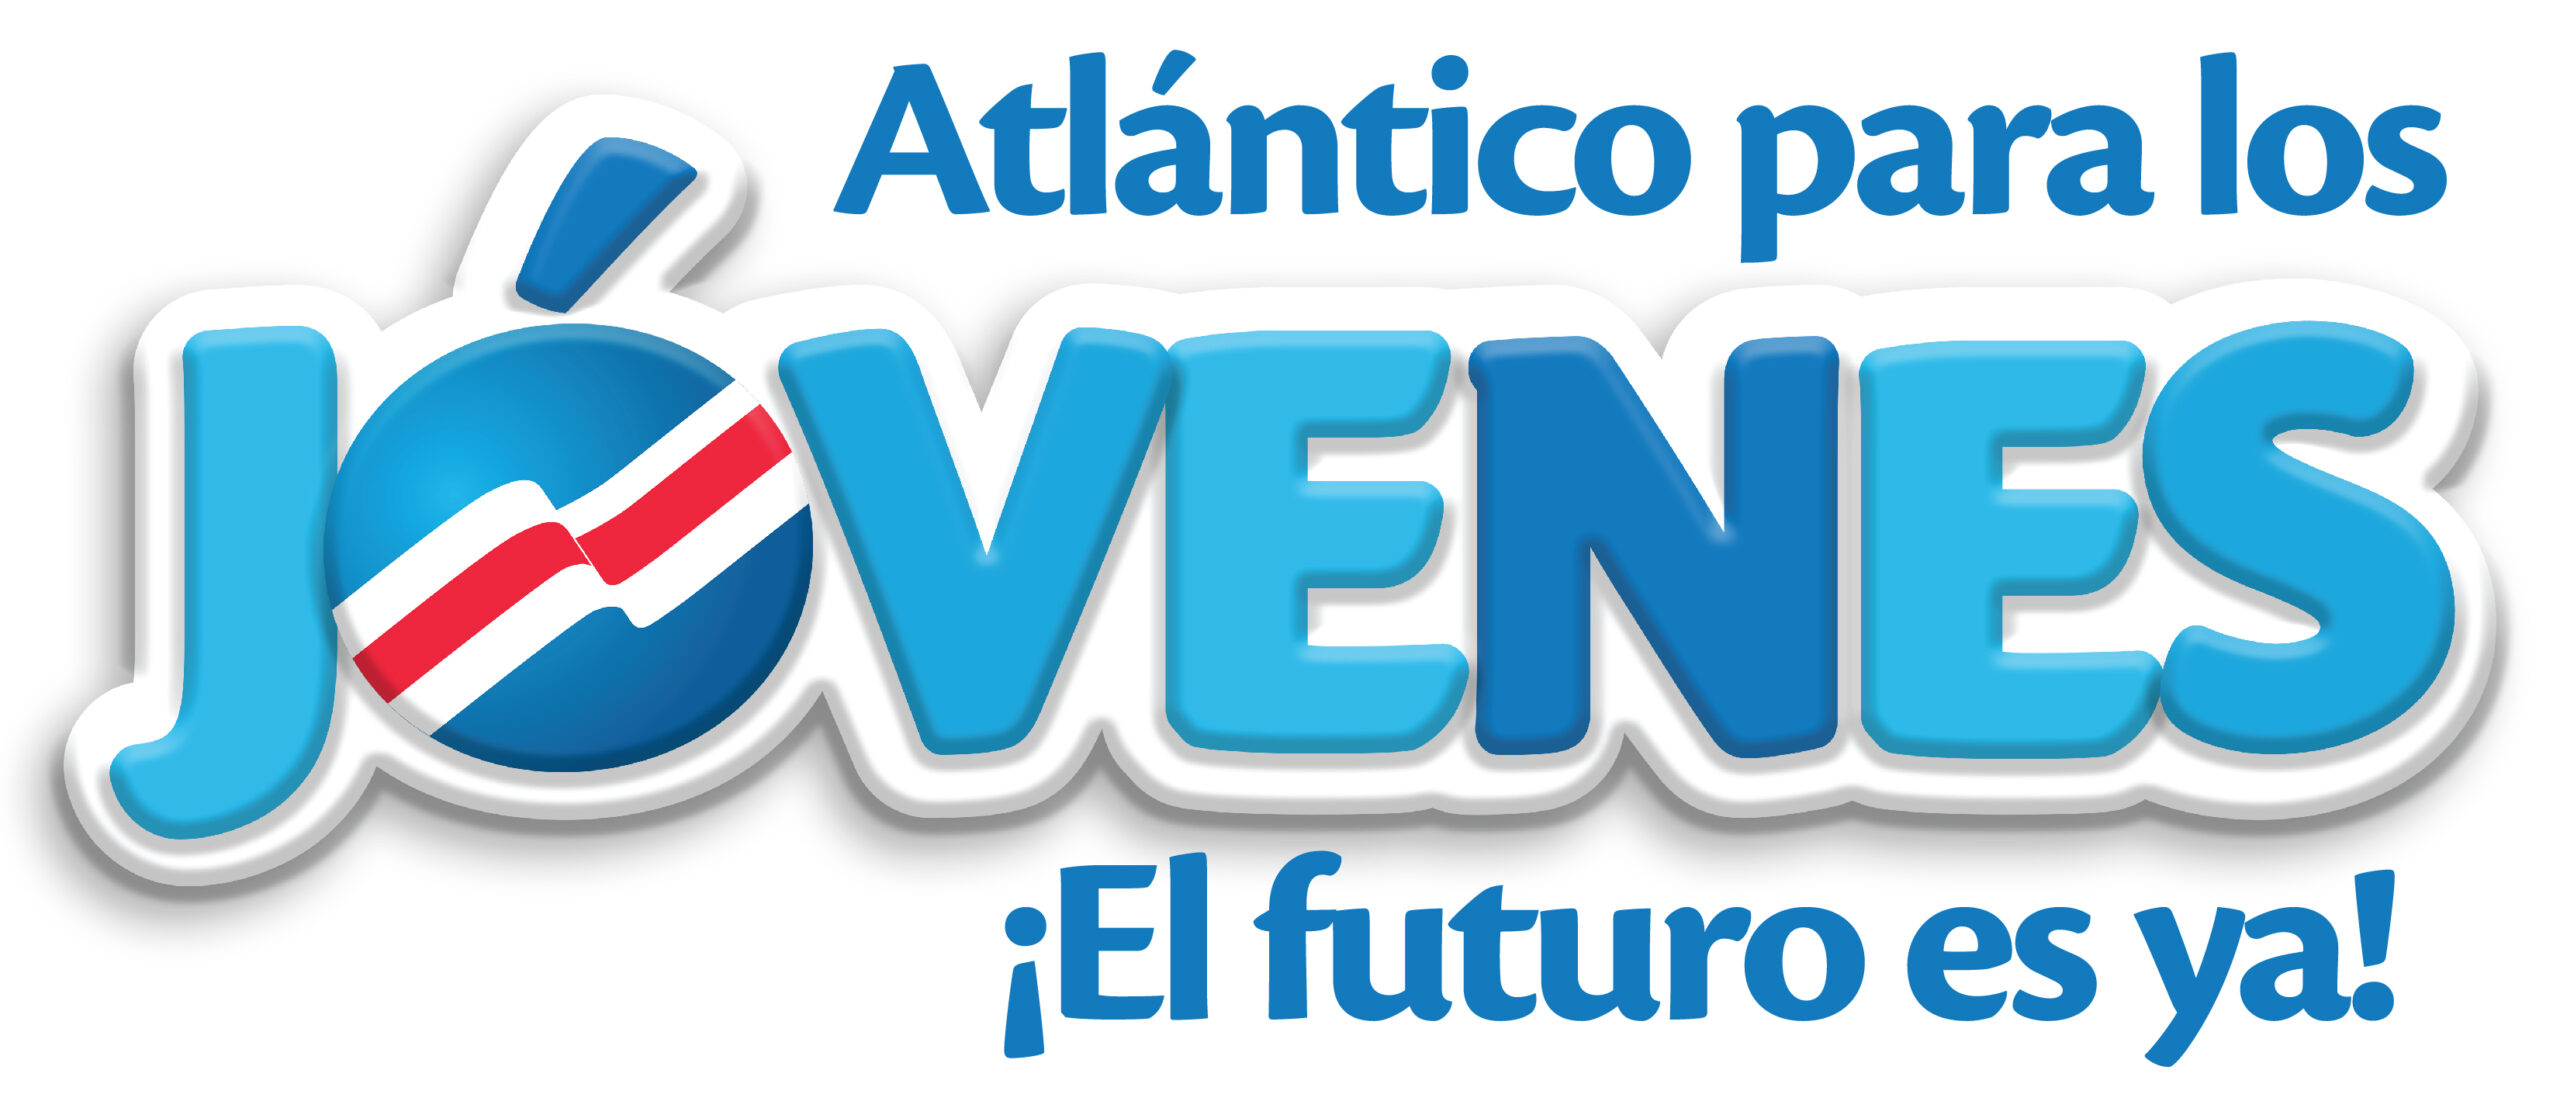 Logotipo del programa Atlántico Para Los Jovenes